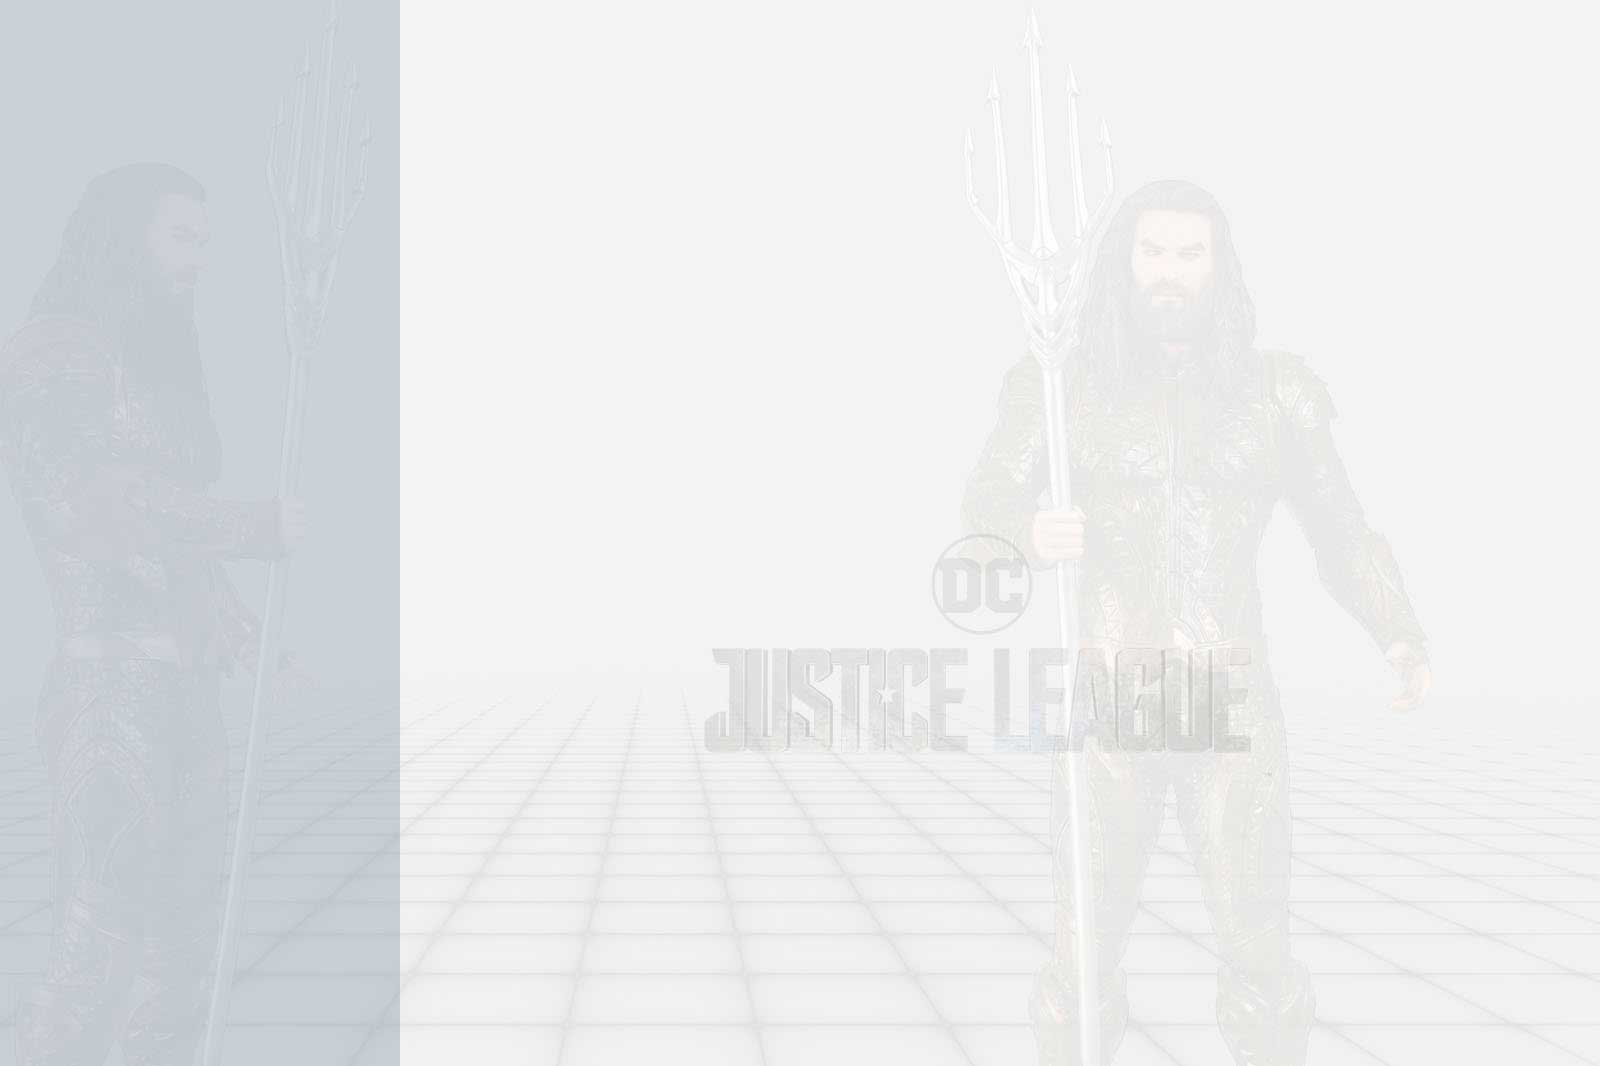 Justice League – Aquaman